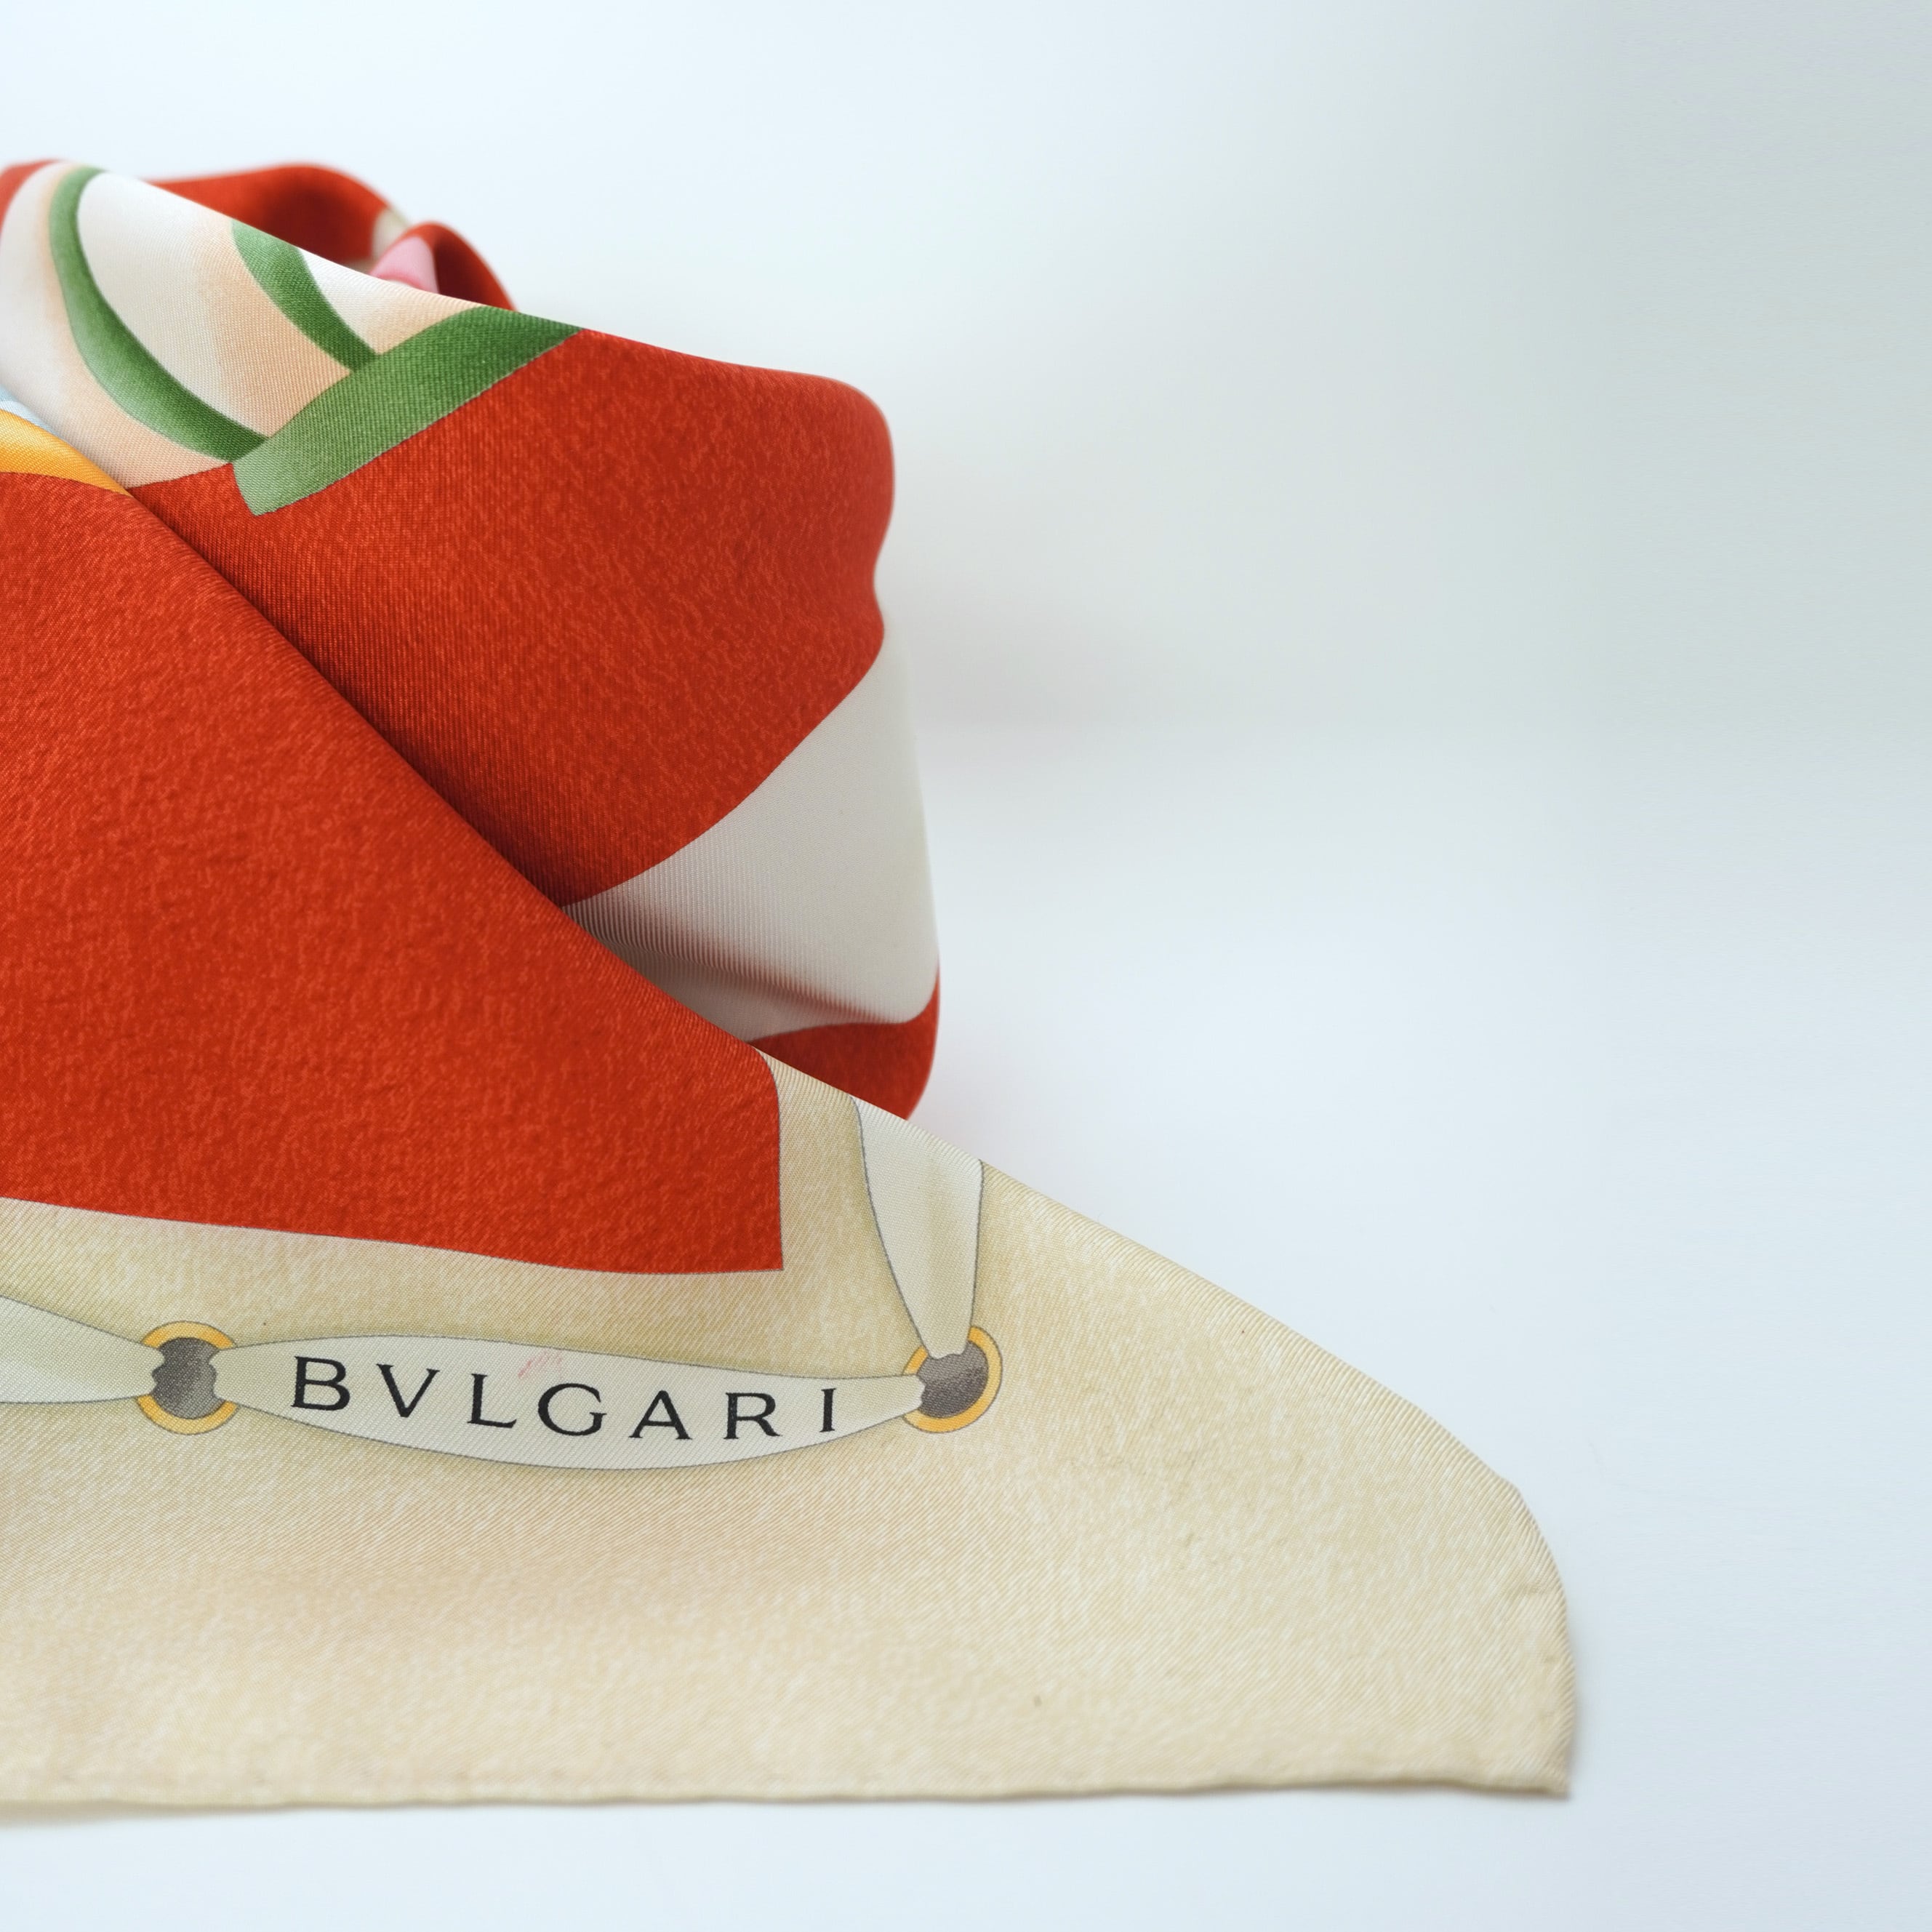 BVLGARI 大判スカーフ made in ITALY